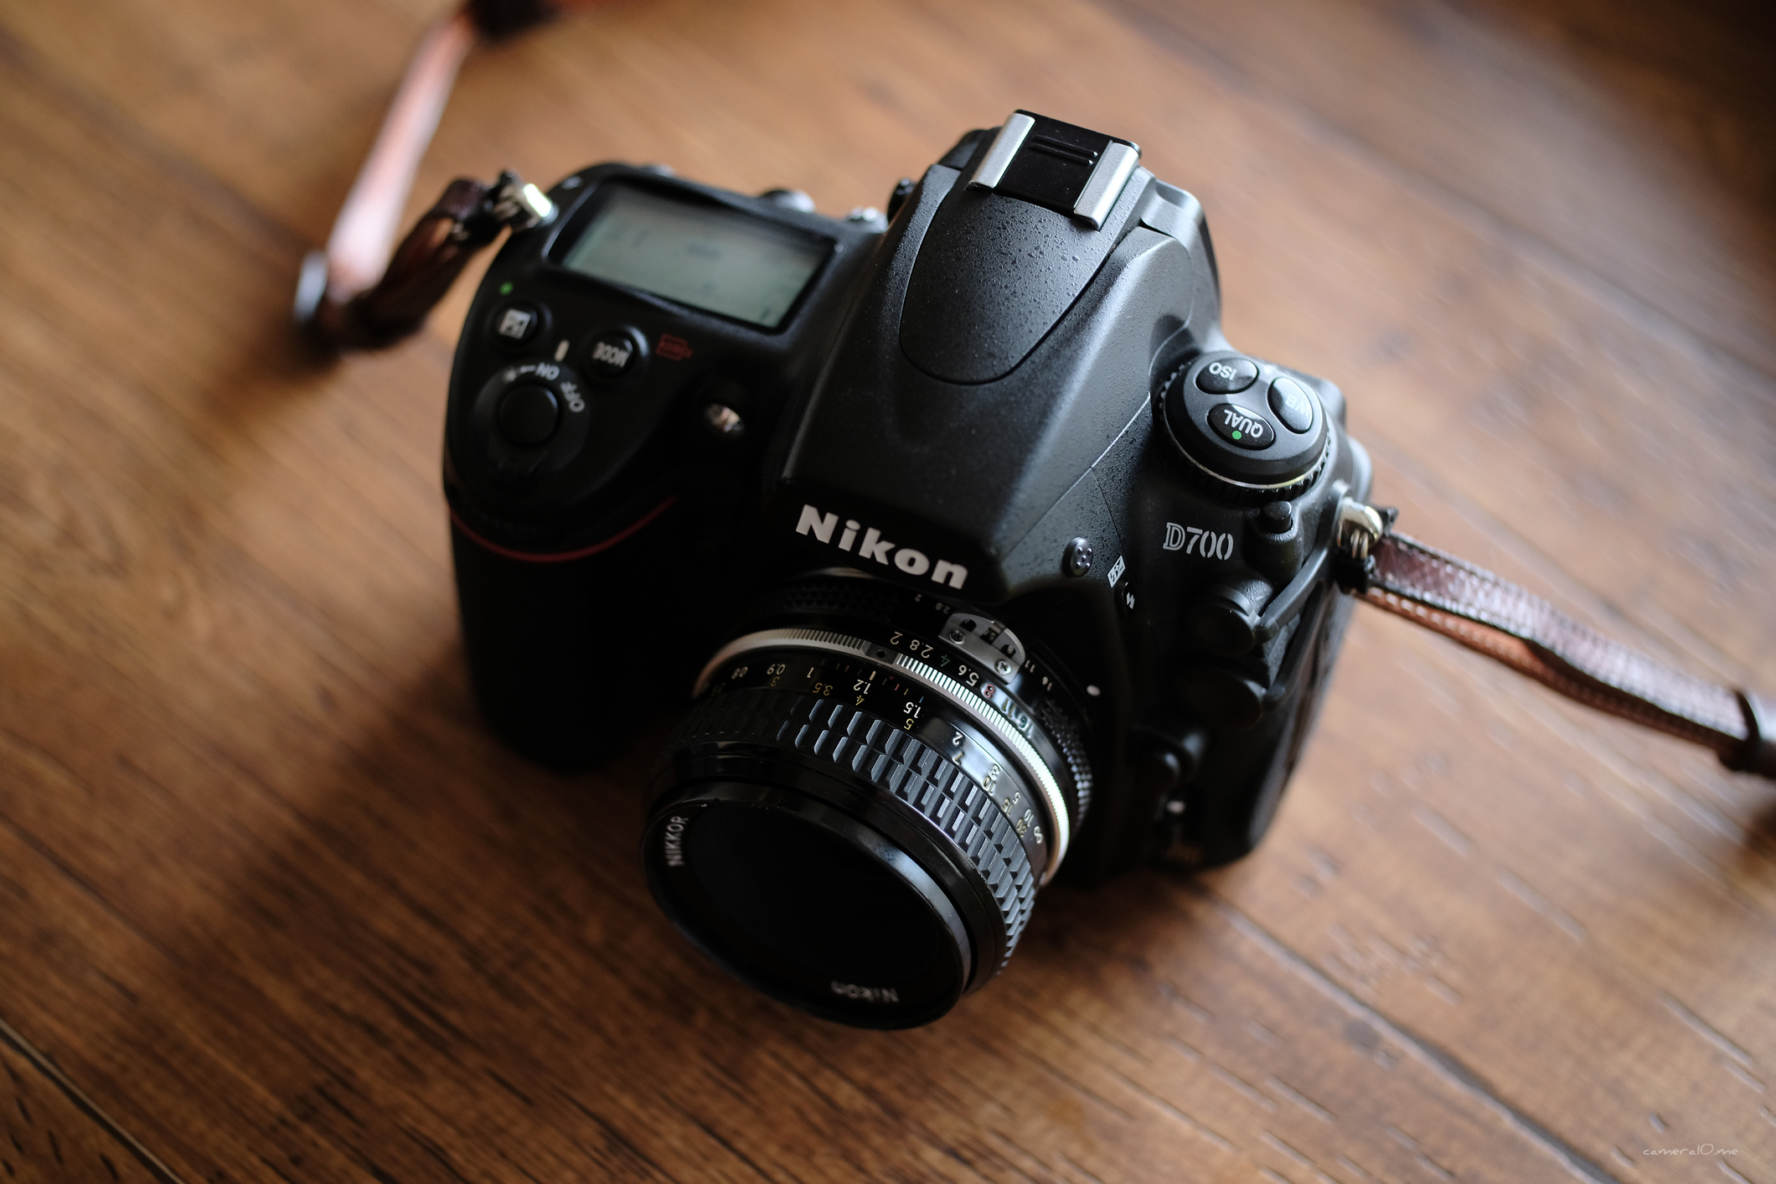 【発売当初約330,000円】Nikon D700★はじめてのフルサイズ機に♪